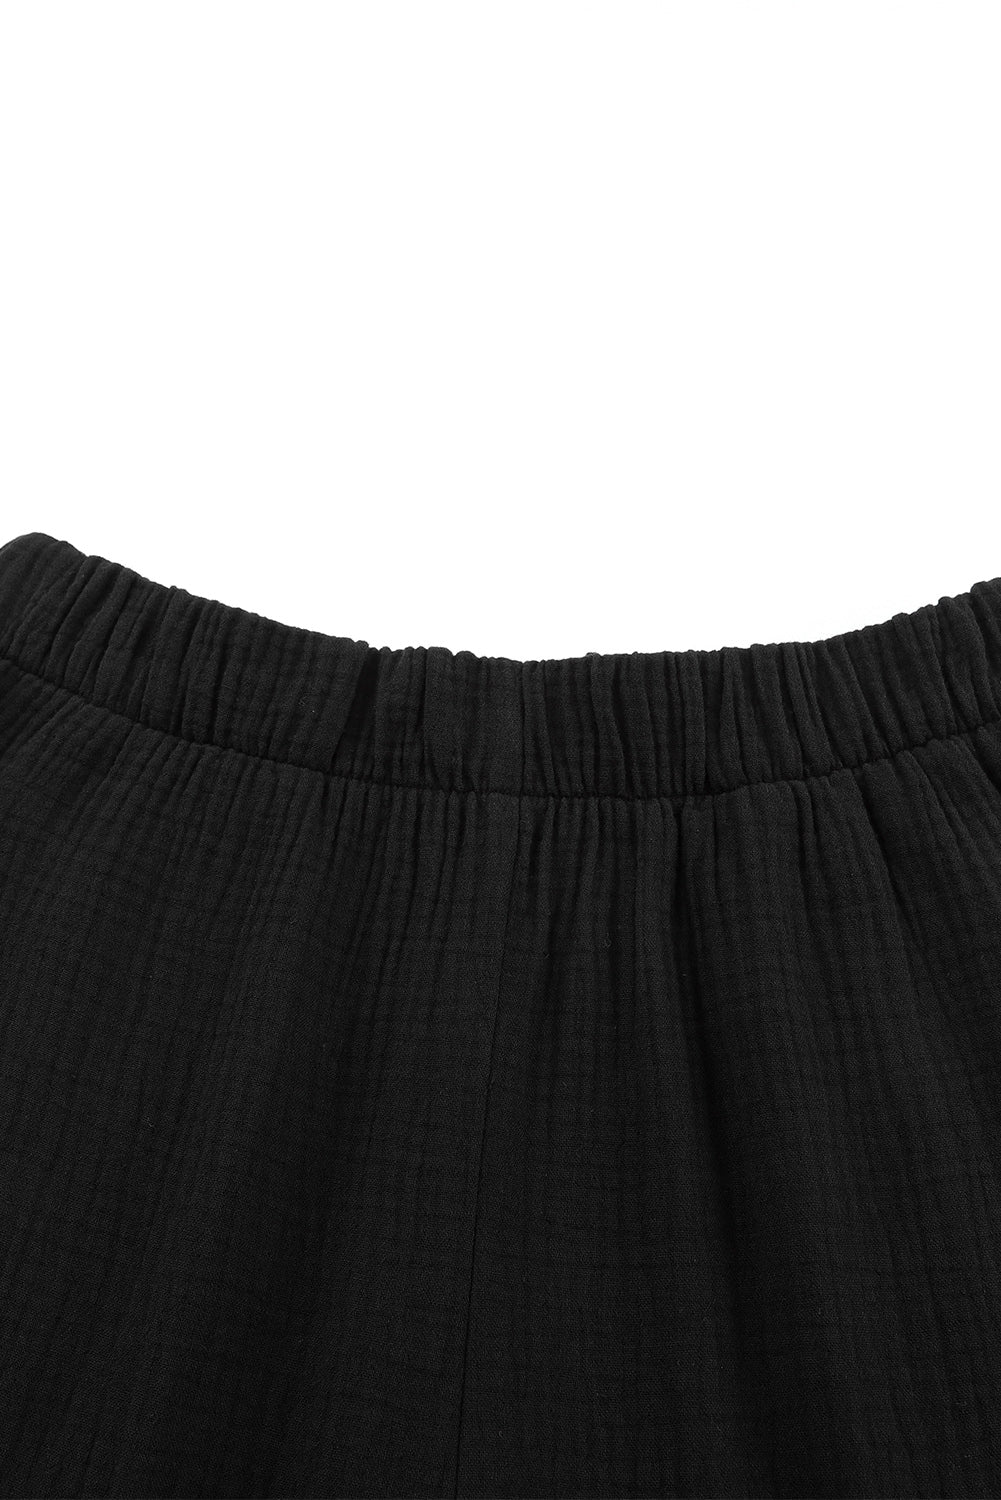 Black Textured High Waist Ruffled Bell Bottom Pants - SELFTRITSS